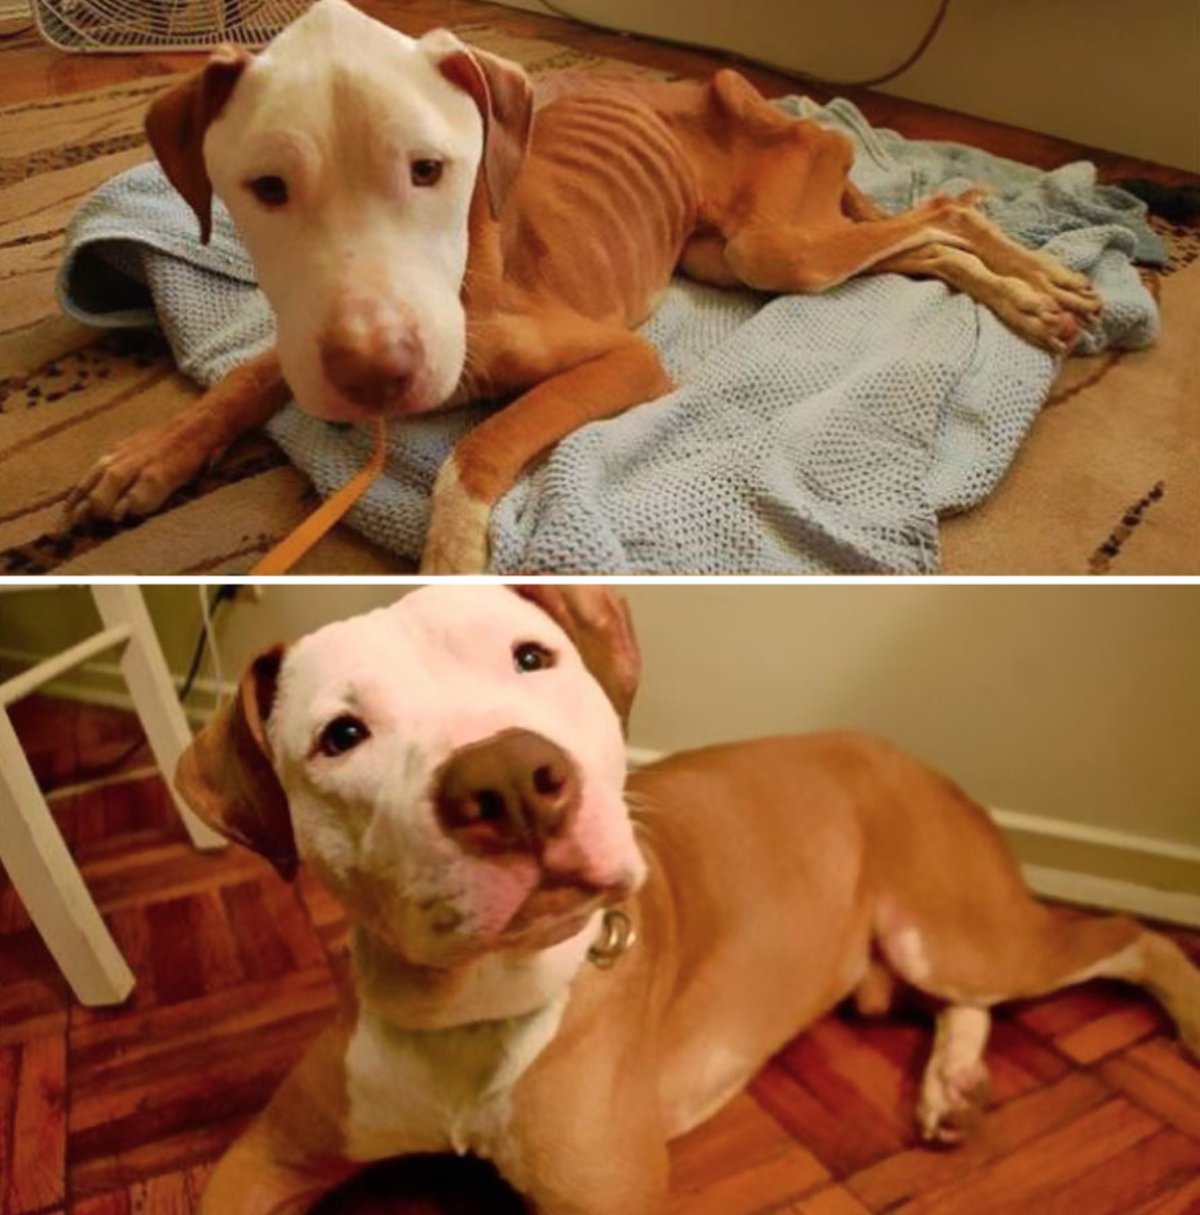 El antes y después de perritos rescatados